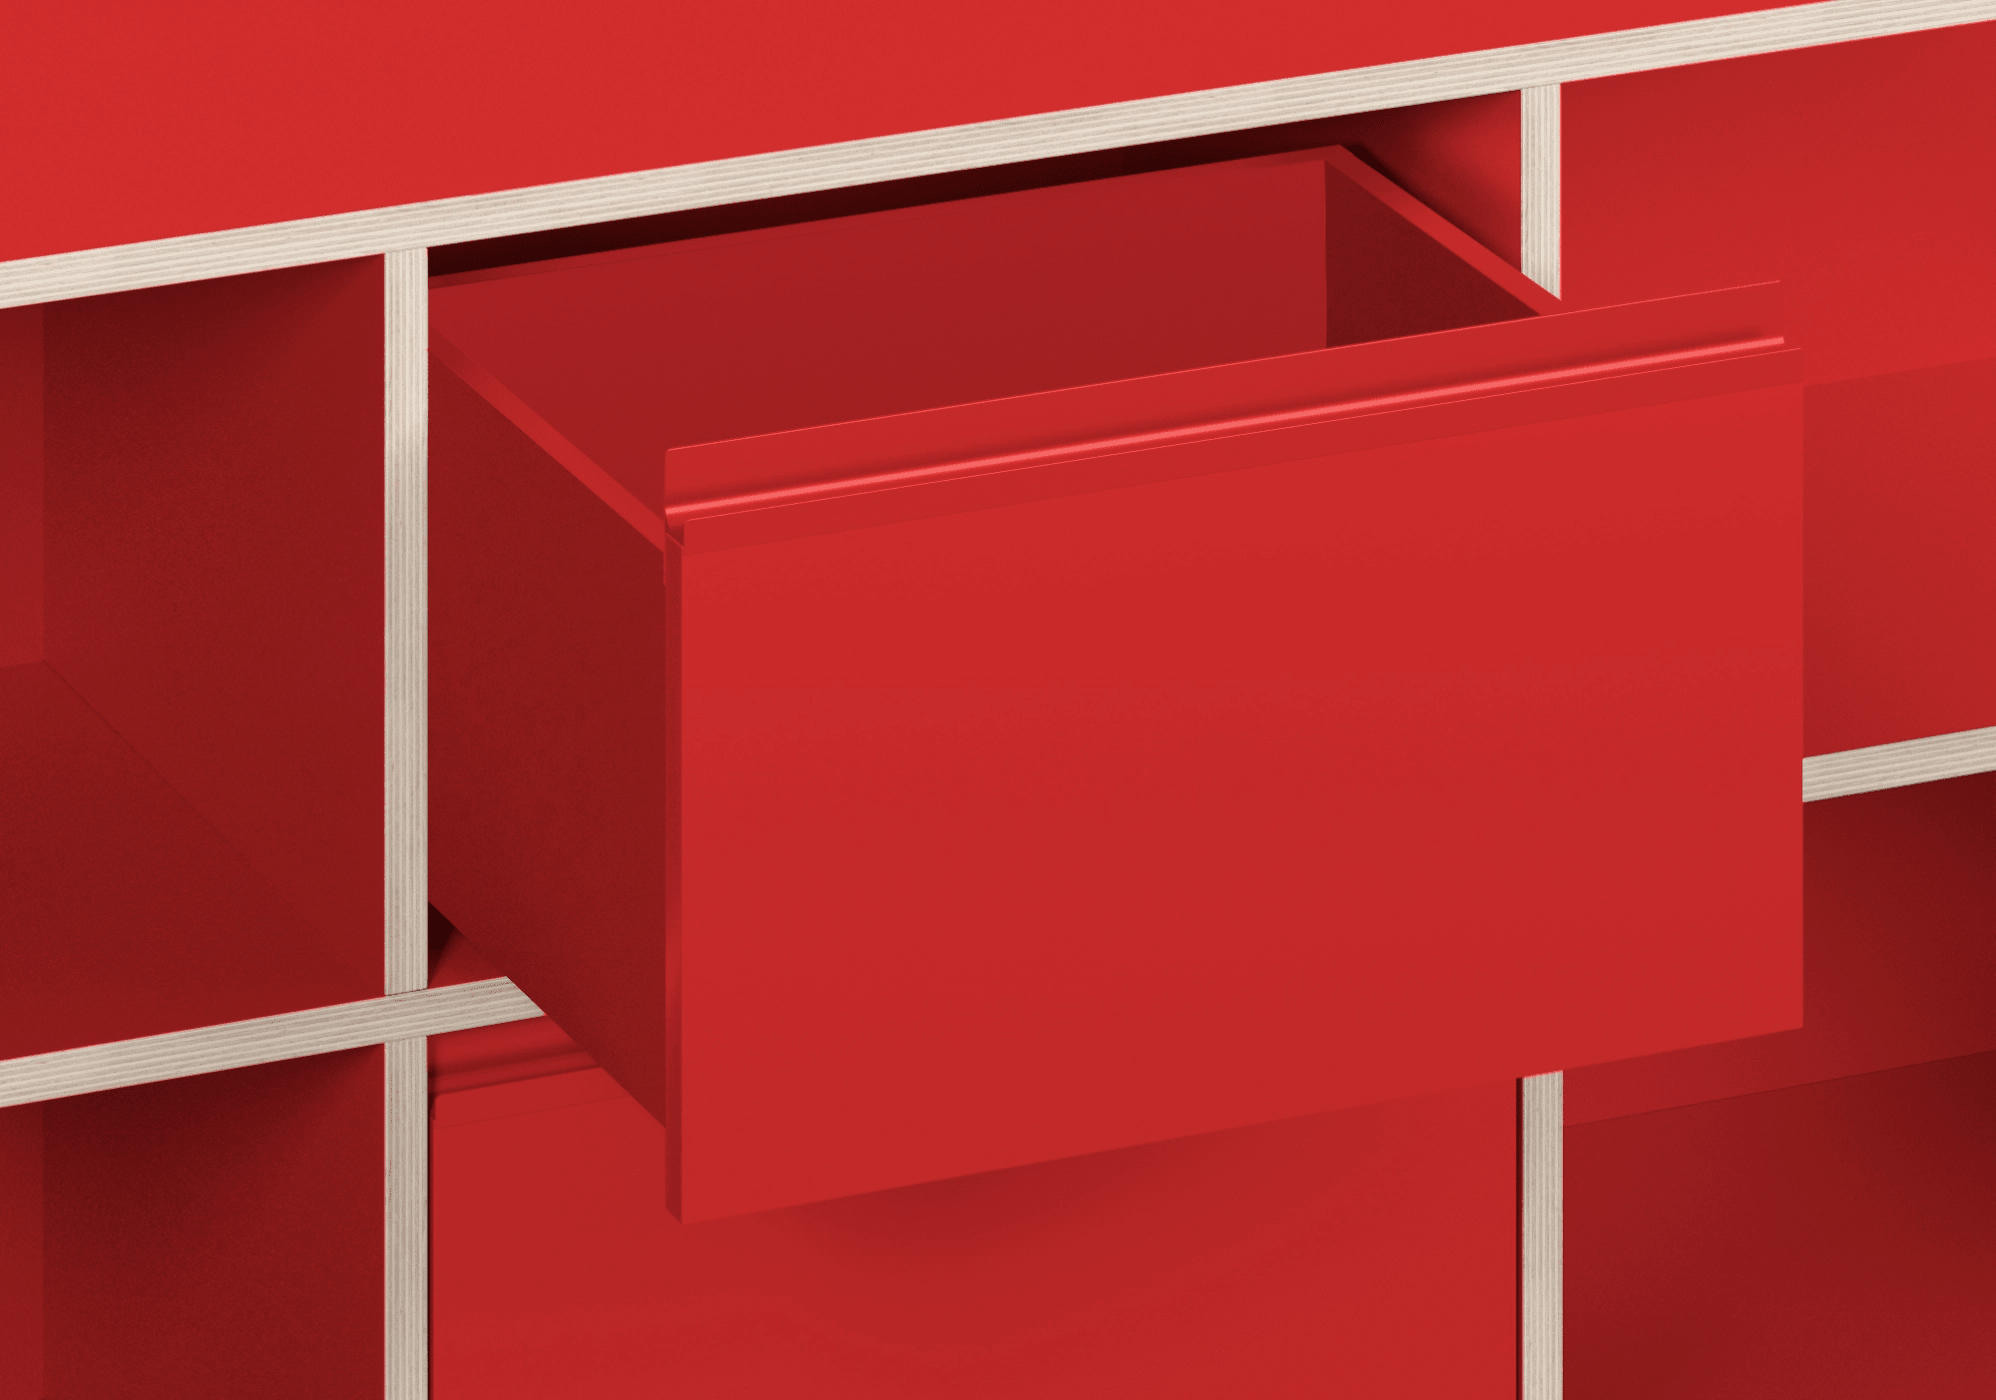 Gran Contrachapado en Rojo Clásico Escritorio con Puertas, Cajones, Paneles Traseros y Organización de Cables madera contrachapada - 160x73x50cm 7